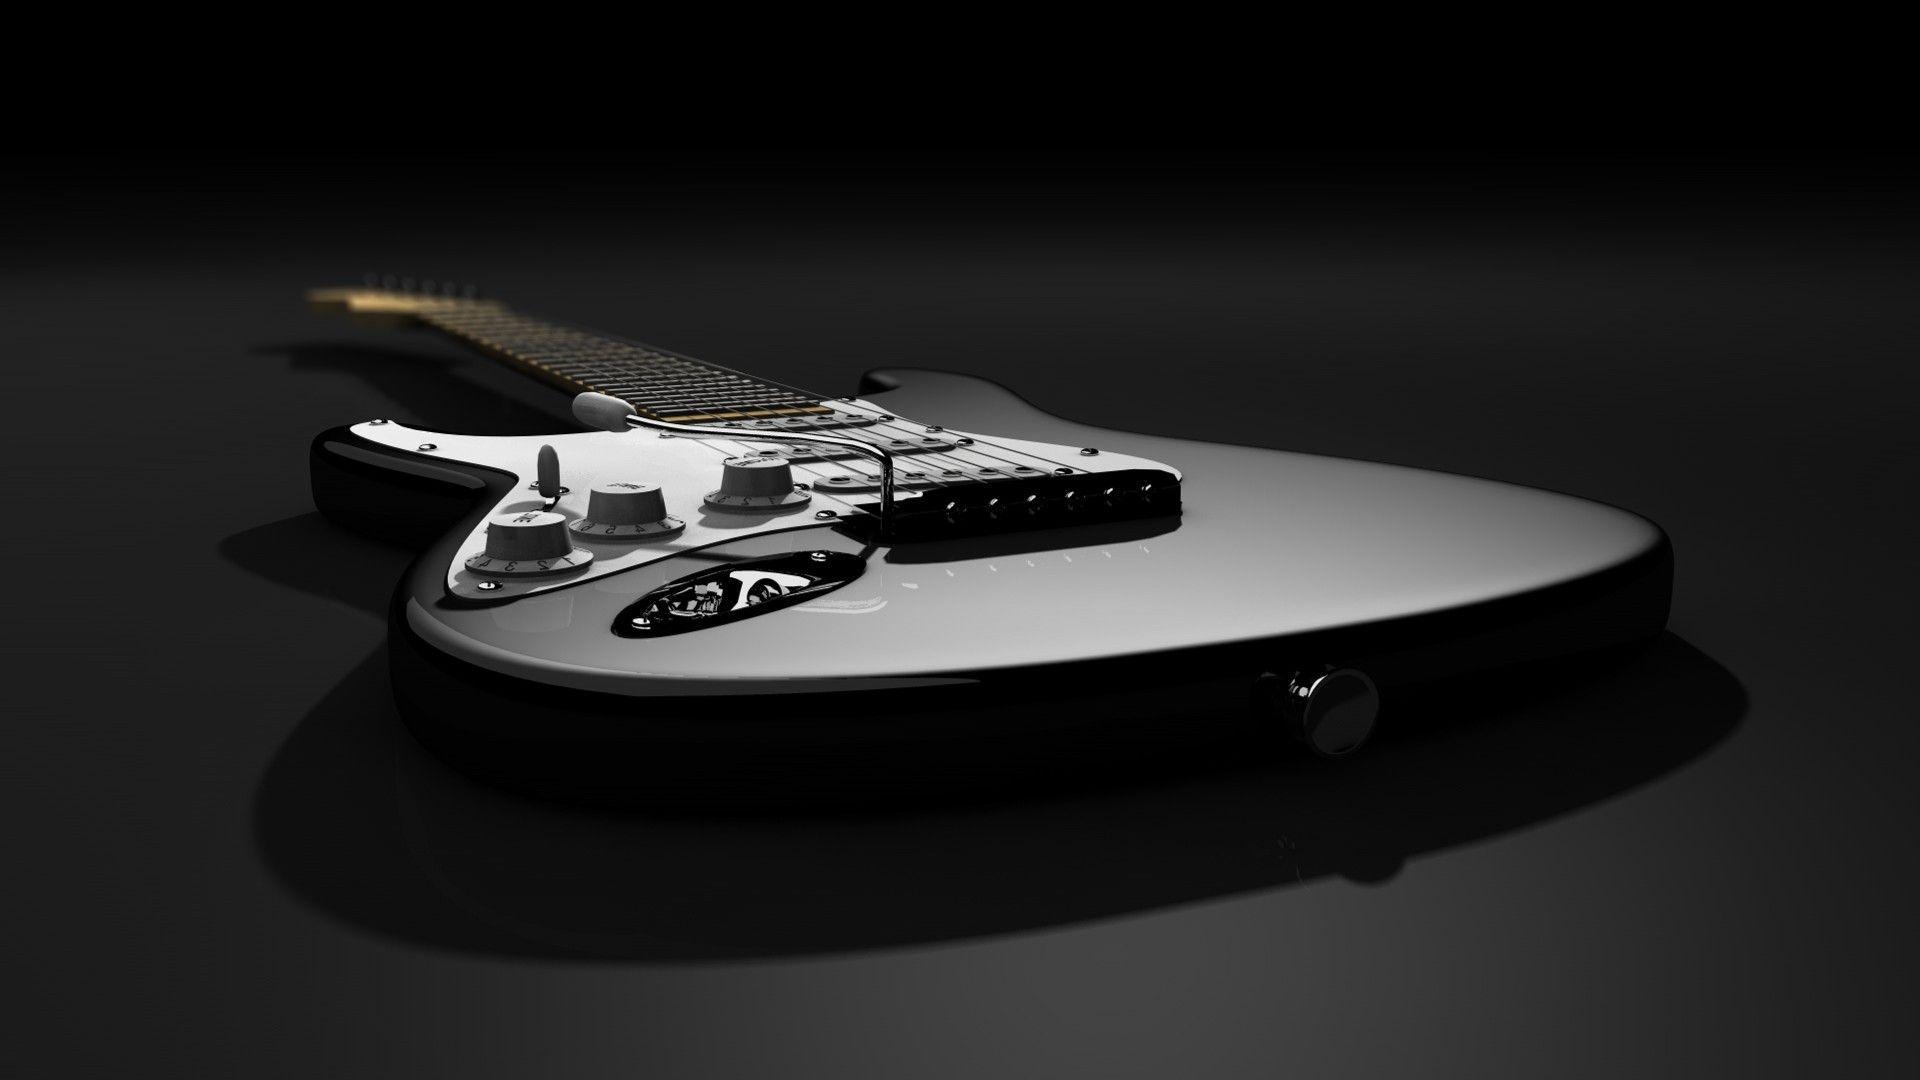 image For > Fender Stratocaster Sunburst Wallpaper